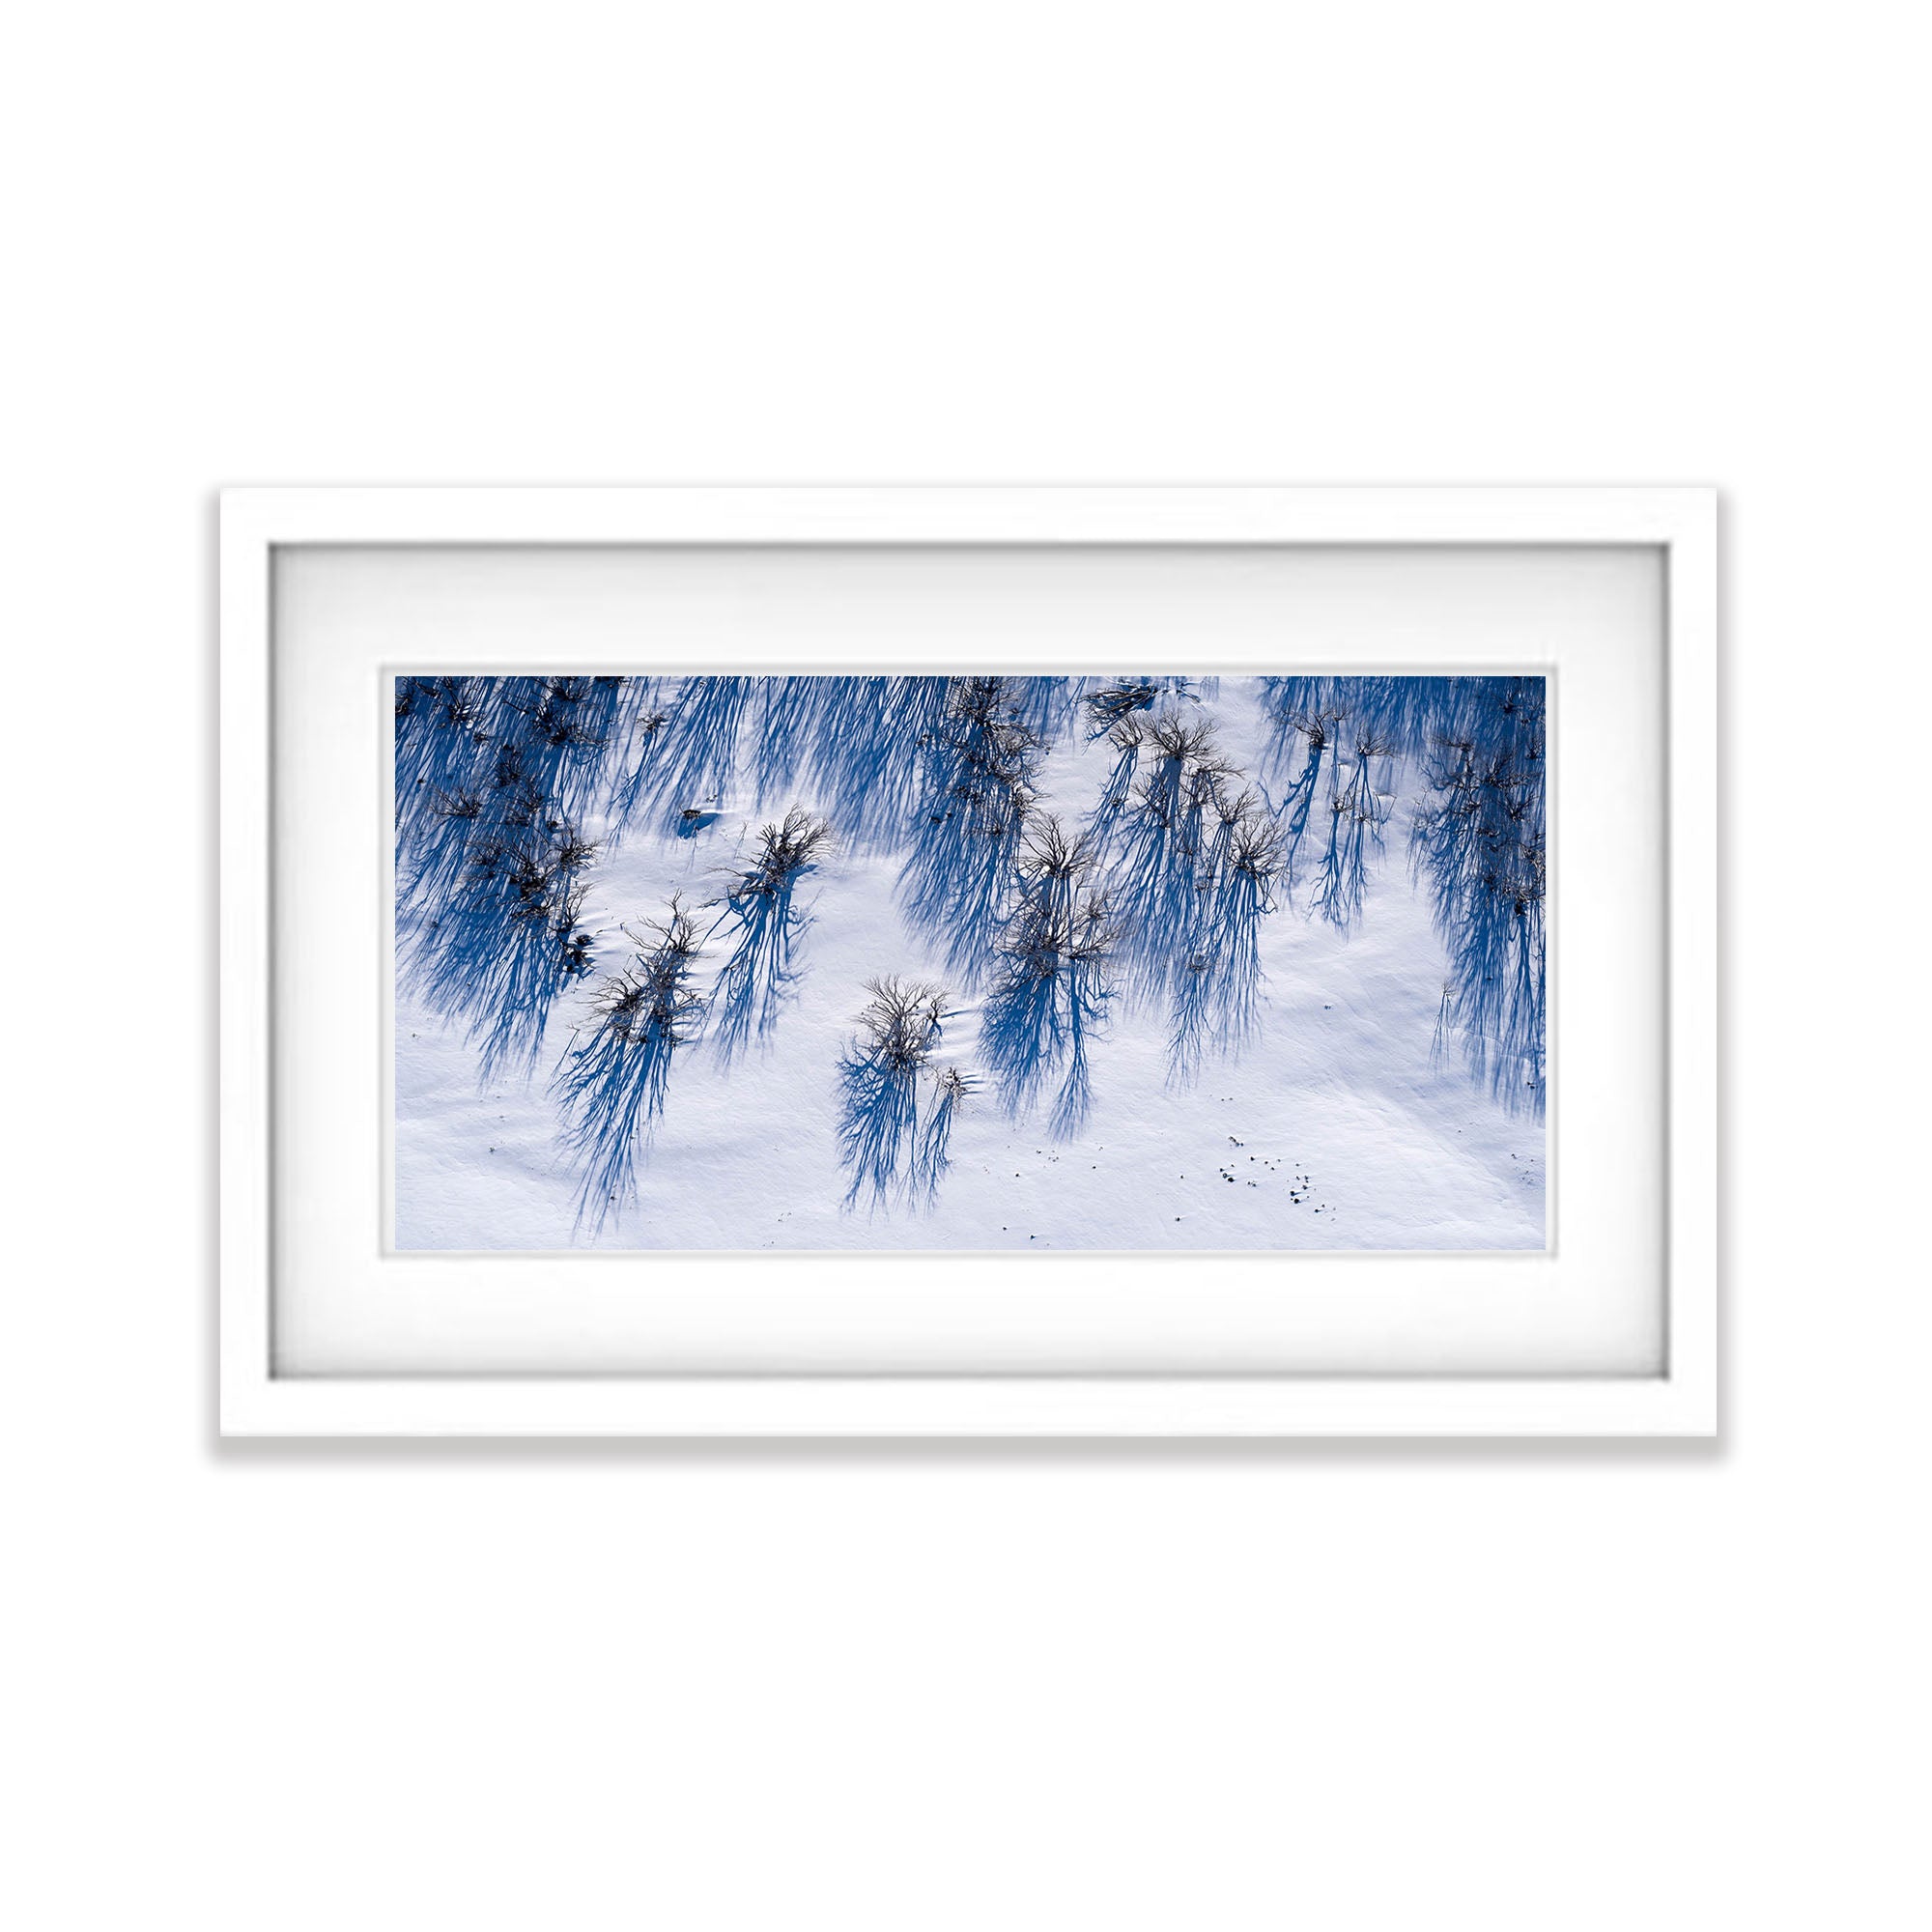 Dead Snow Gums, Mount Hotham, VIC